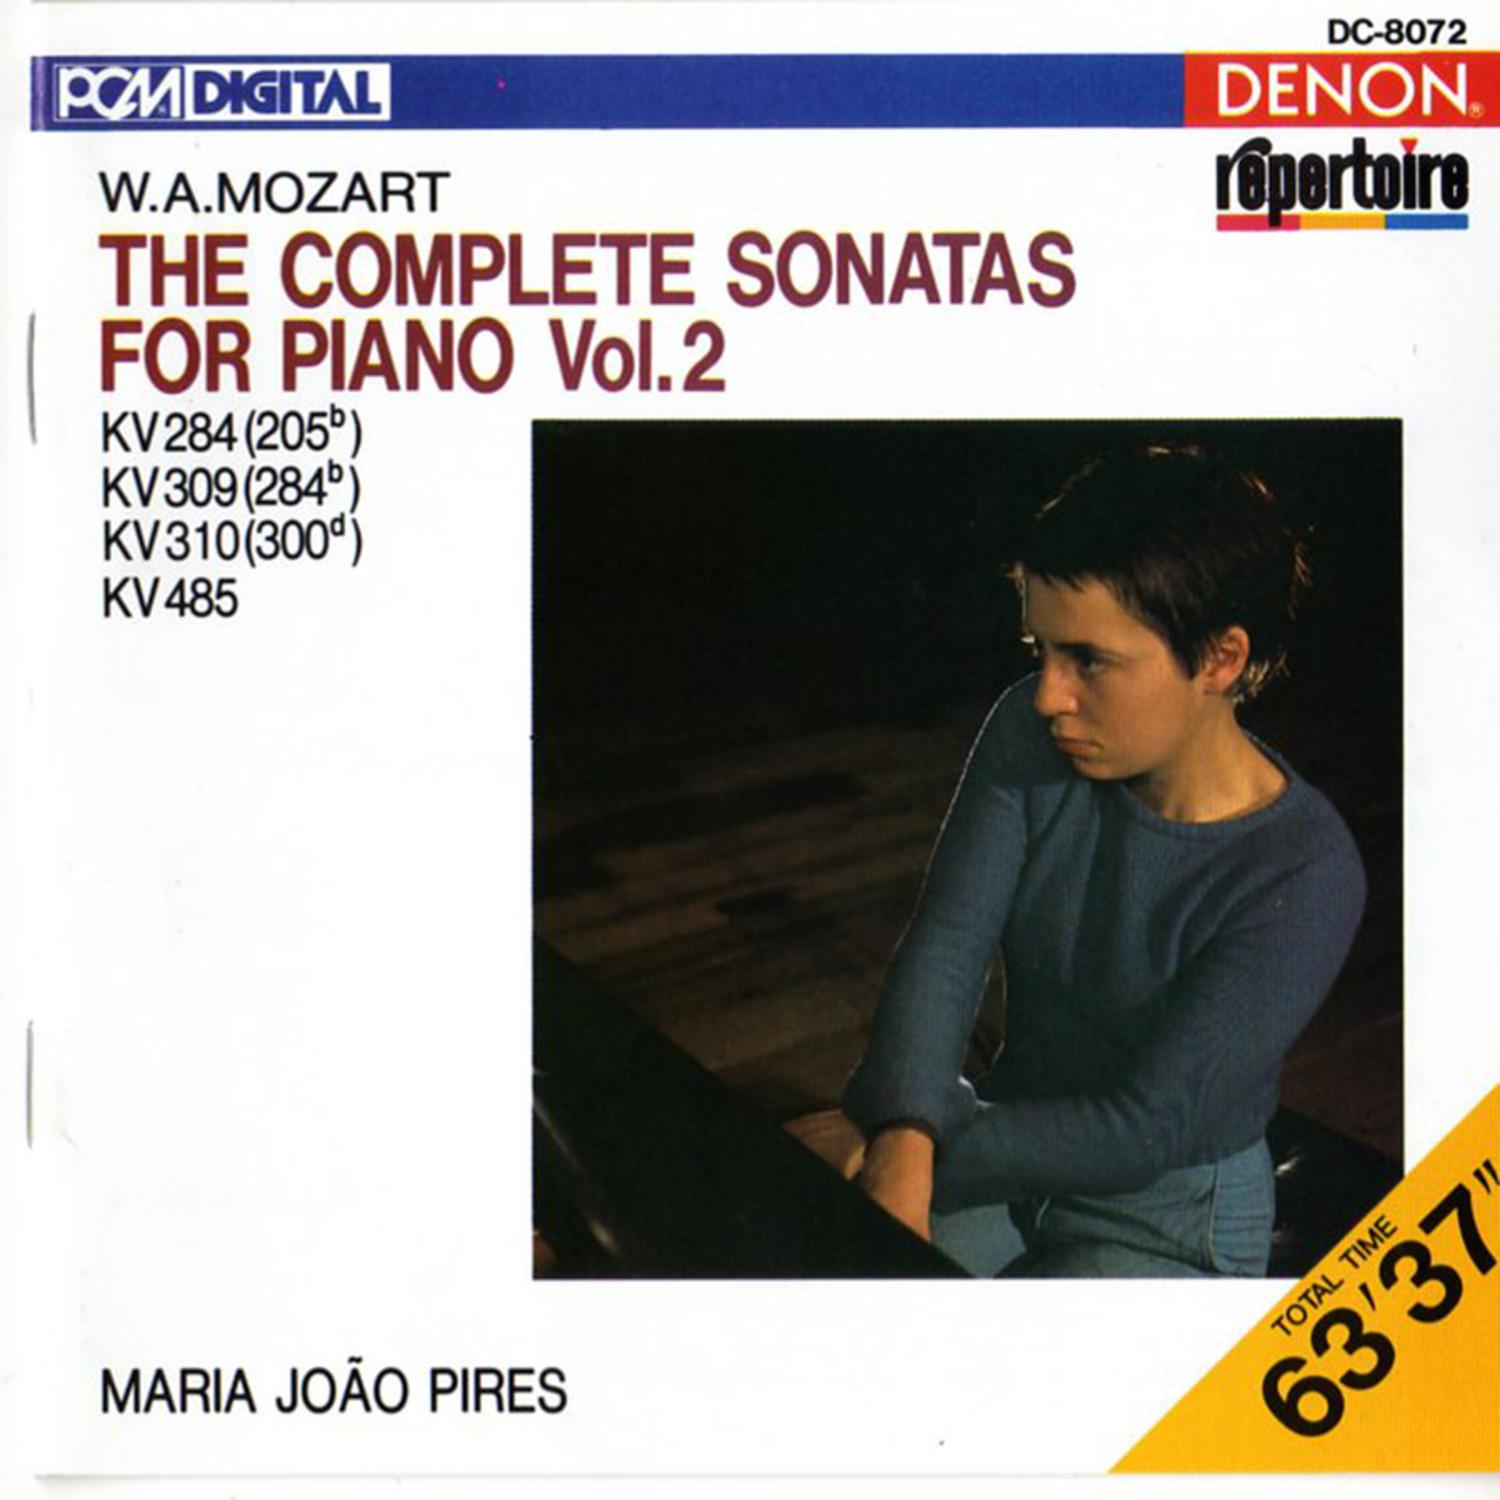 Piano Sonata No. 7 in C Major, K. 309: I. Allegro con Spirito